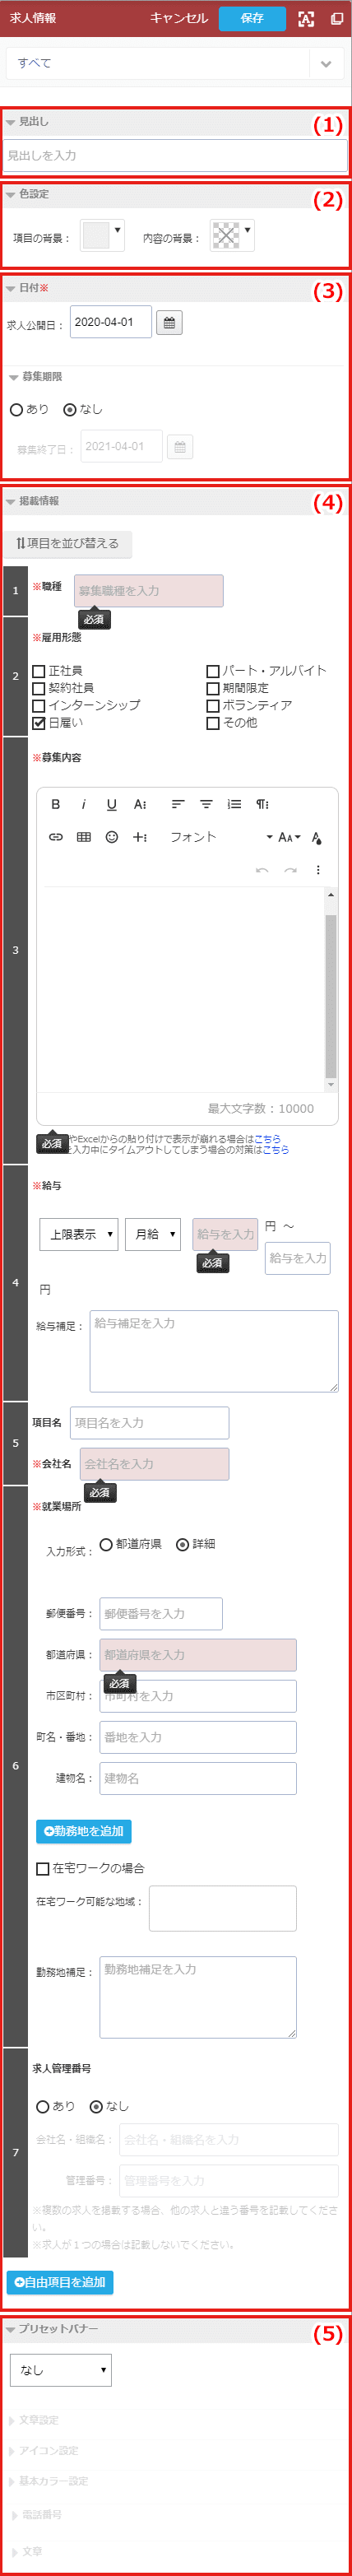 自動車紹介：条件検索ブロック